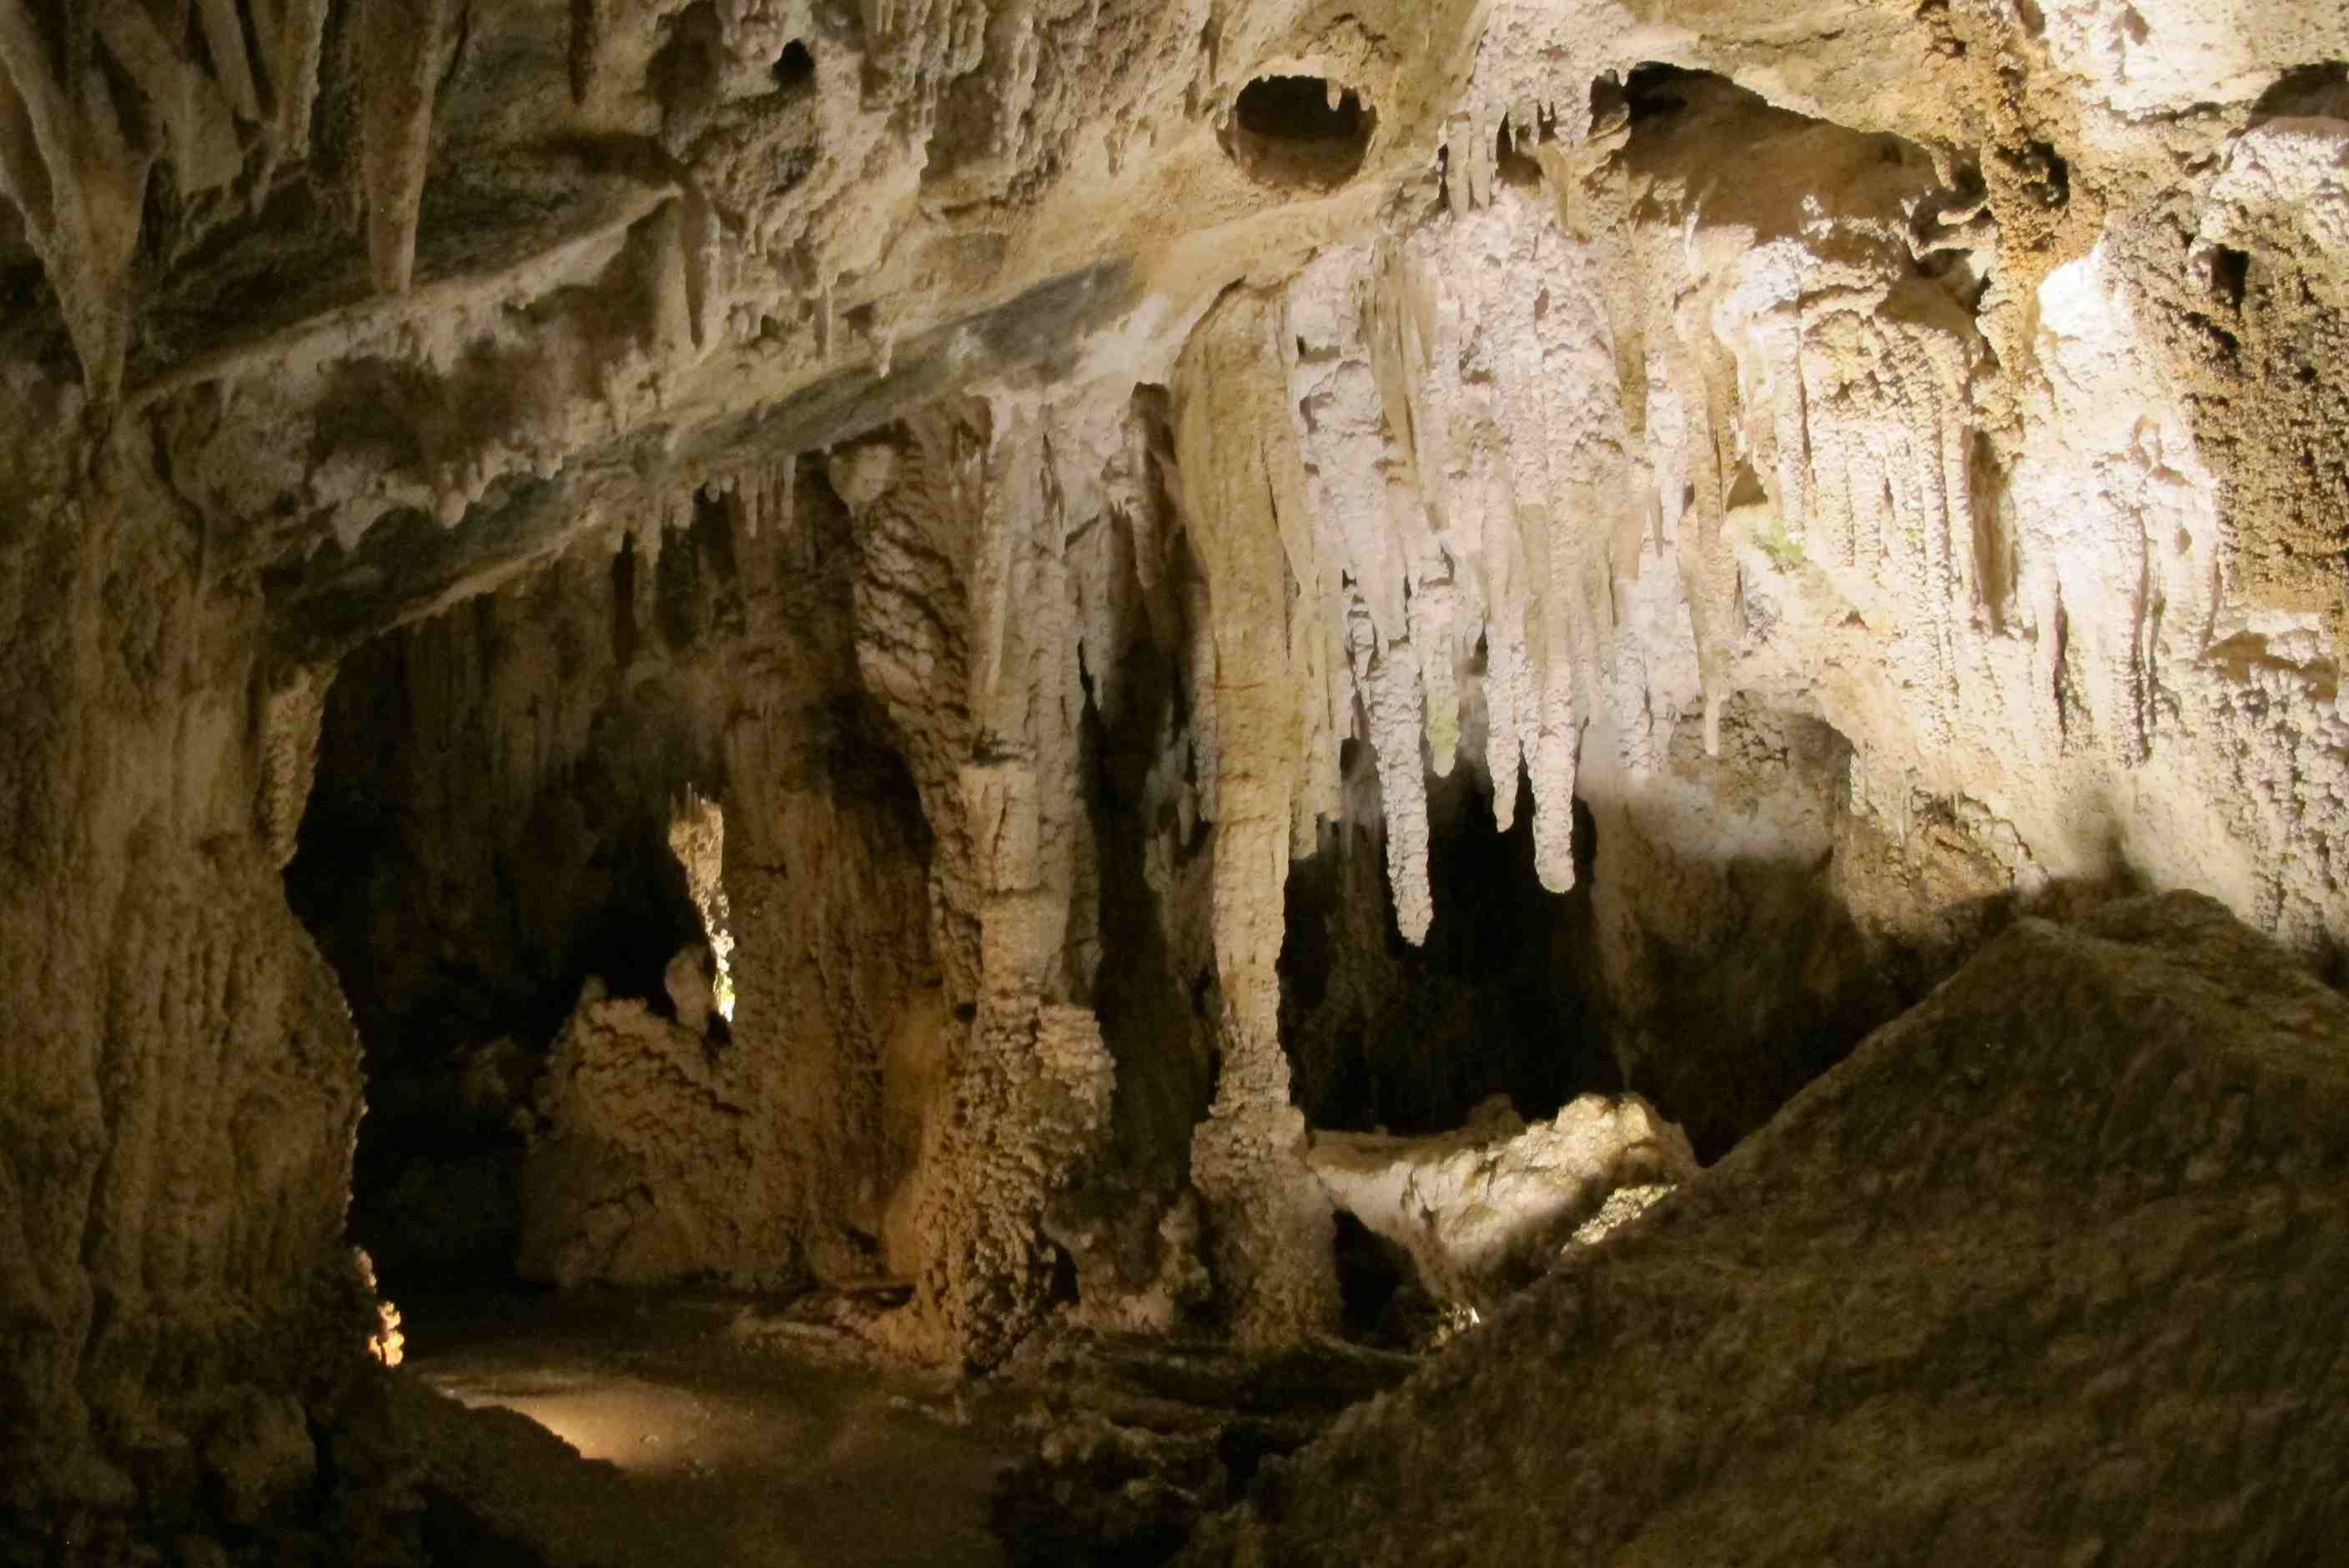 Ngarua Cave